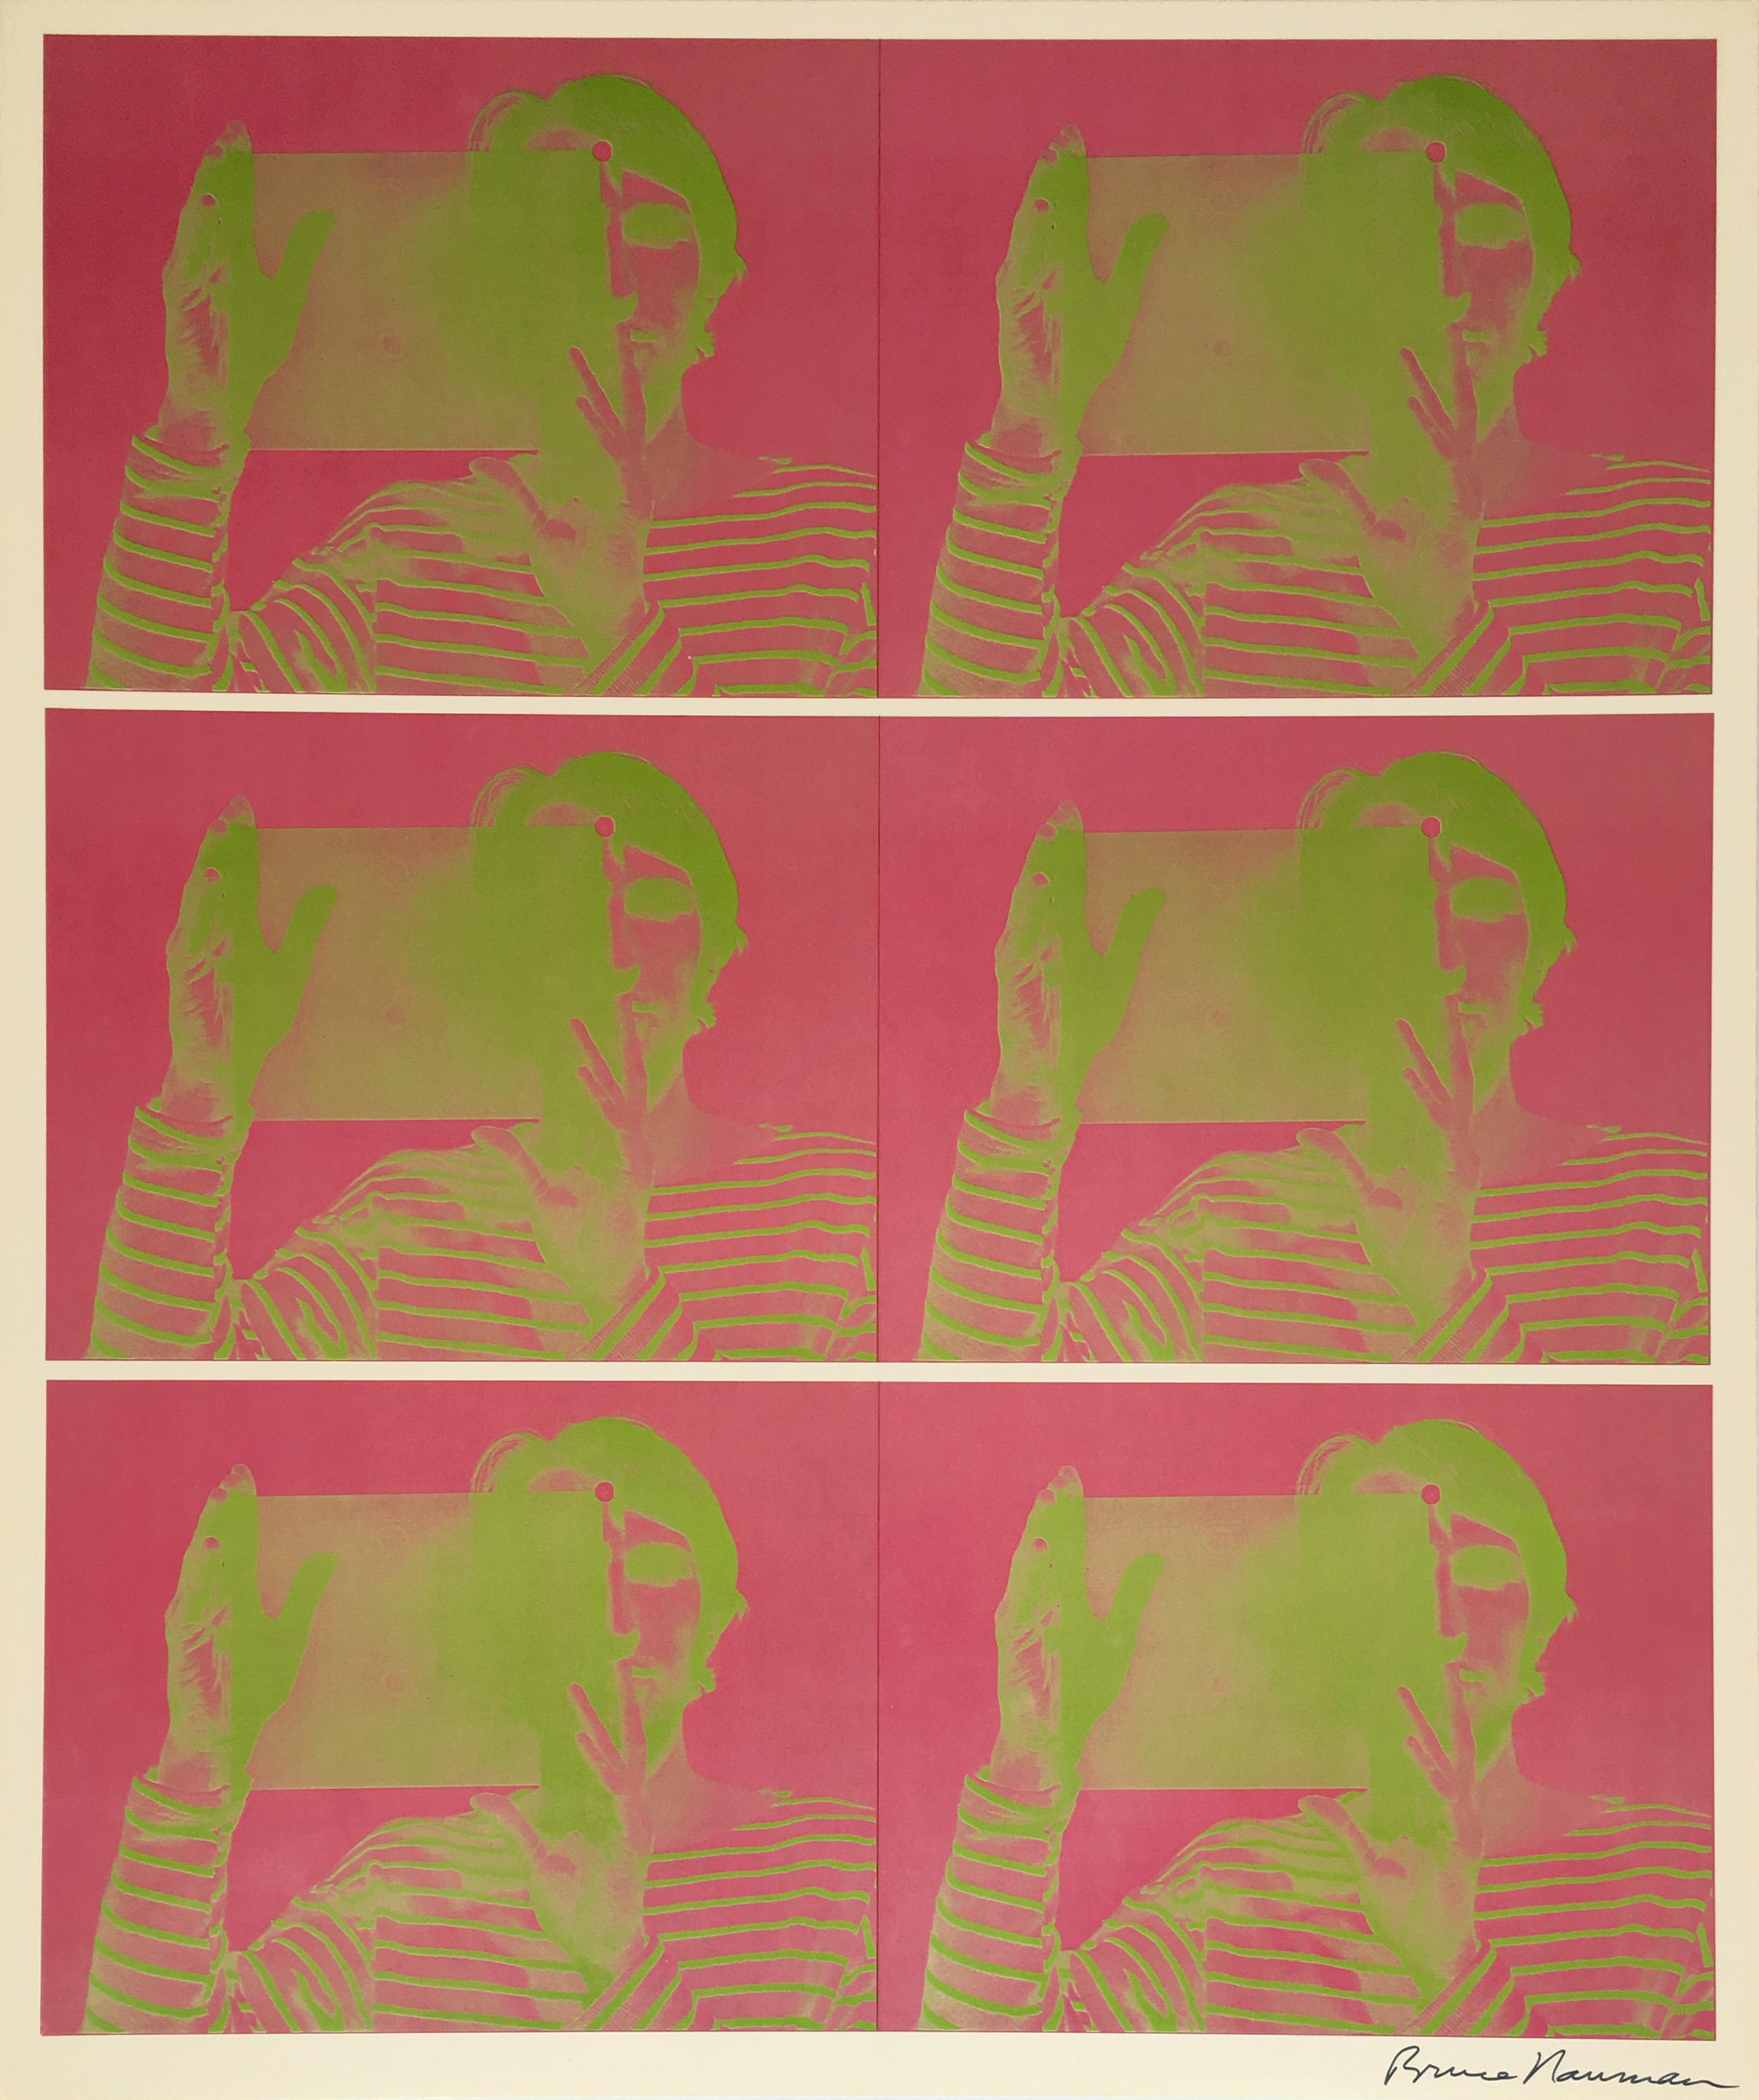 Bruce Nauman
Untitled (lithographie en deux couleurs, publiée à l'occasion de l'exposition "Bruce Nauman : Hologrammes, Videotapes, and Other Works"), Leo Castelli, 1969
Lithographie
24 x 20 pouces
Signé